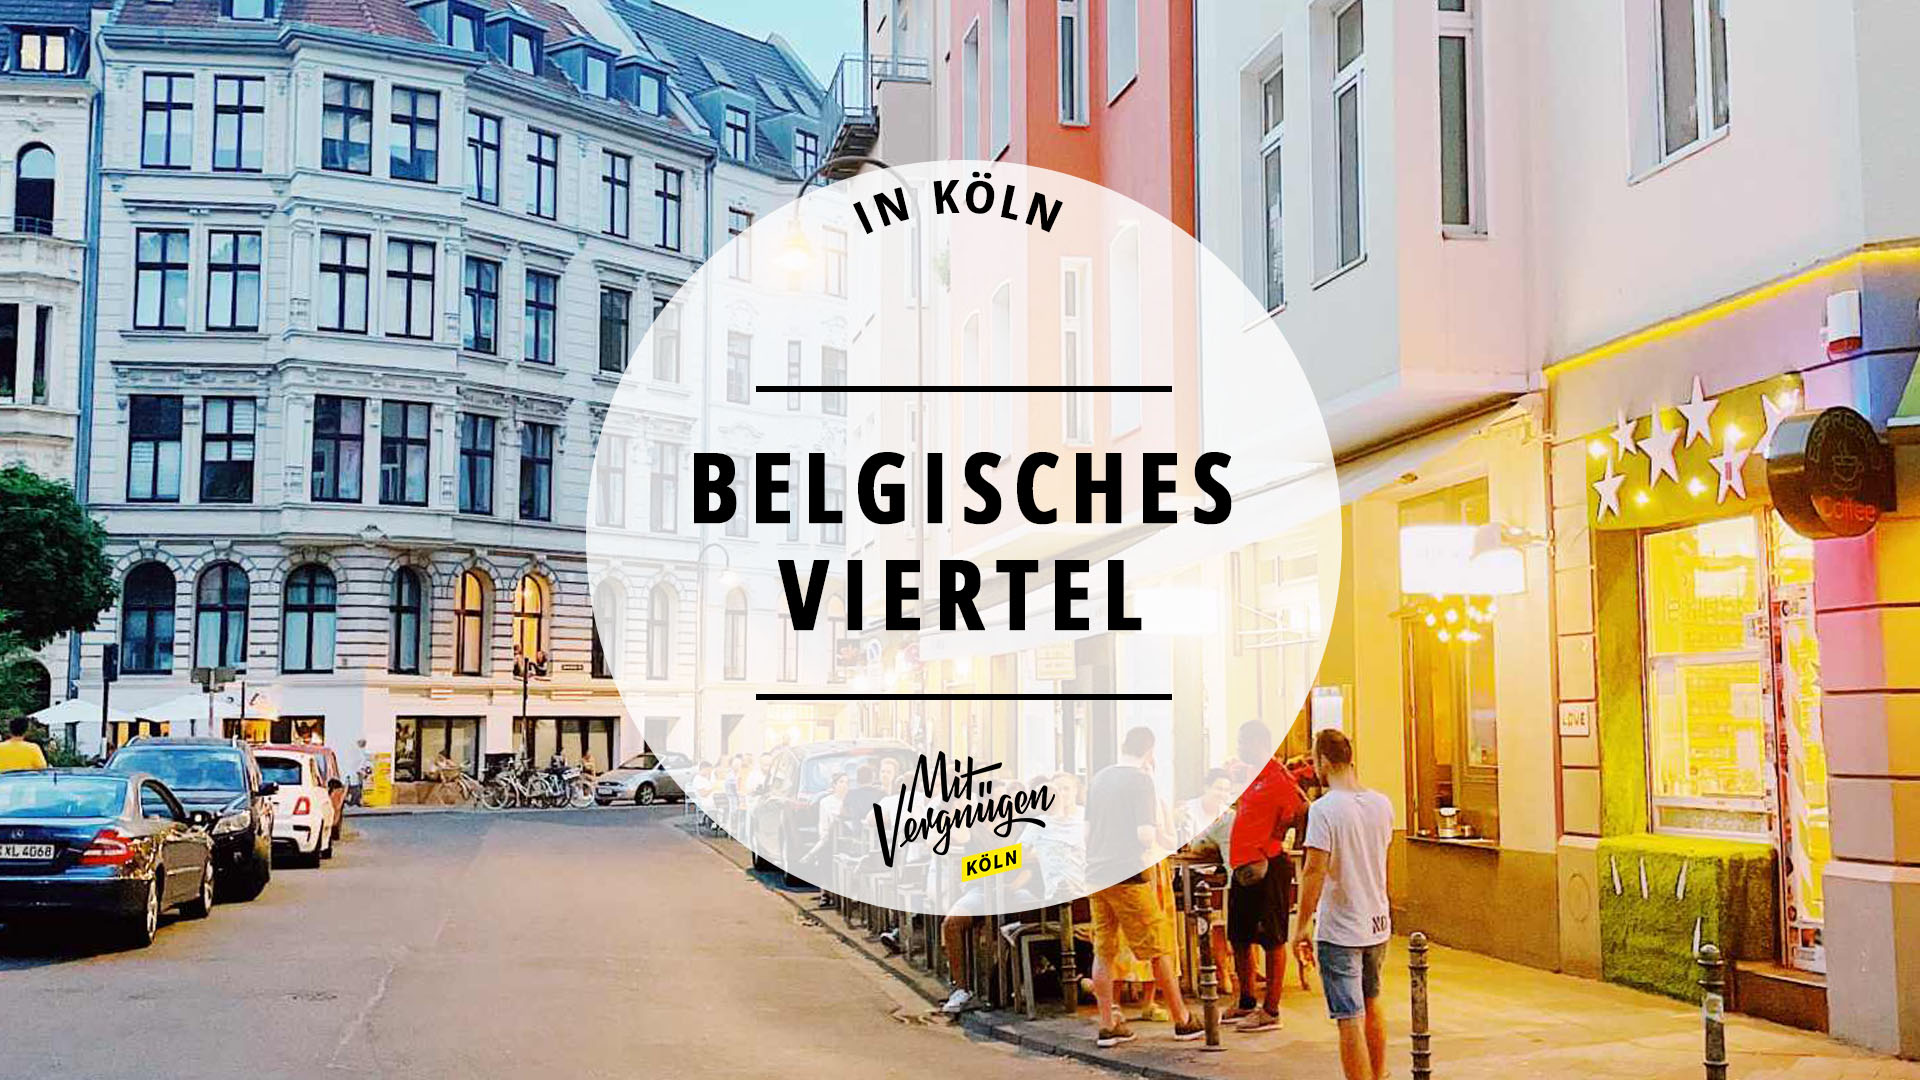 #21 Dinge, die ihr im Belgischen Viertel immer machen könnt